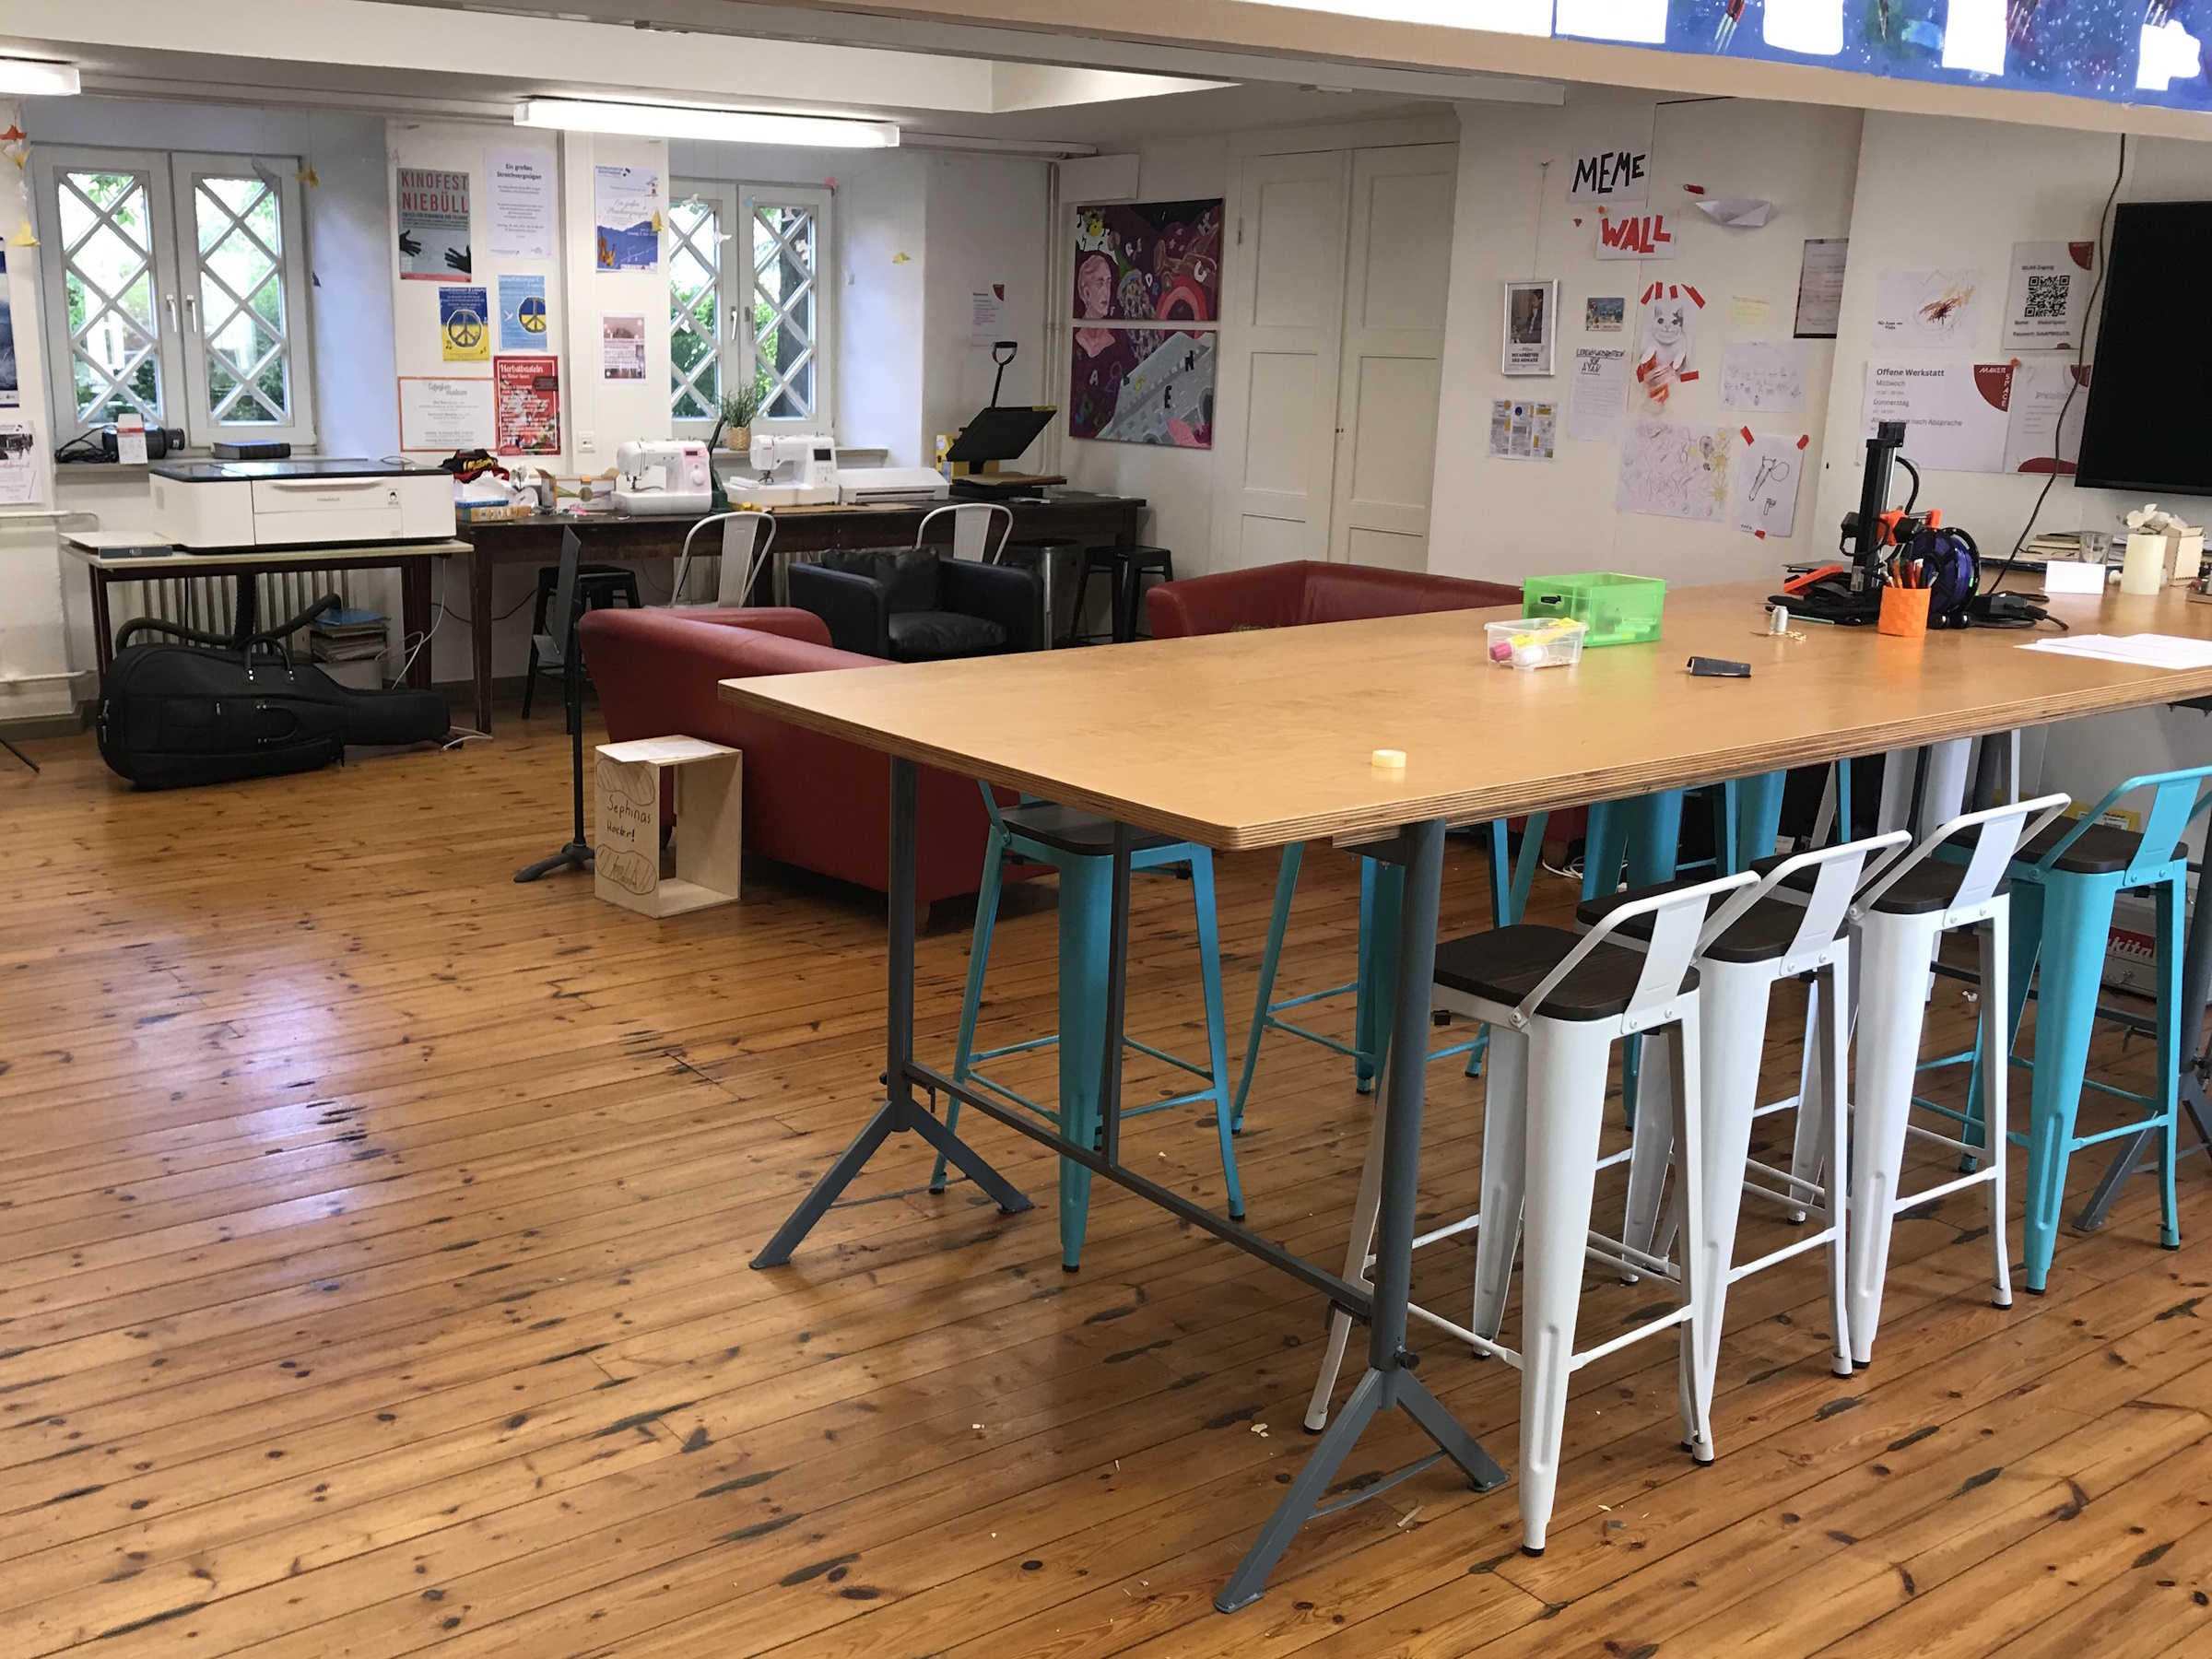 Einblick in einen eingericheteten Makerspace in einr Schule. Tische, Sitzgelegenheiten, Geräte usw.